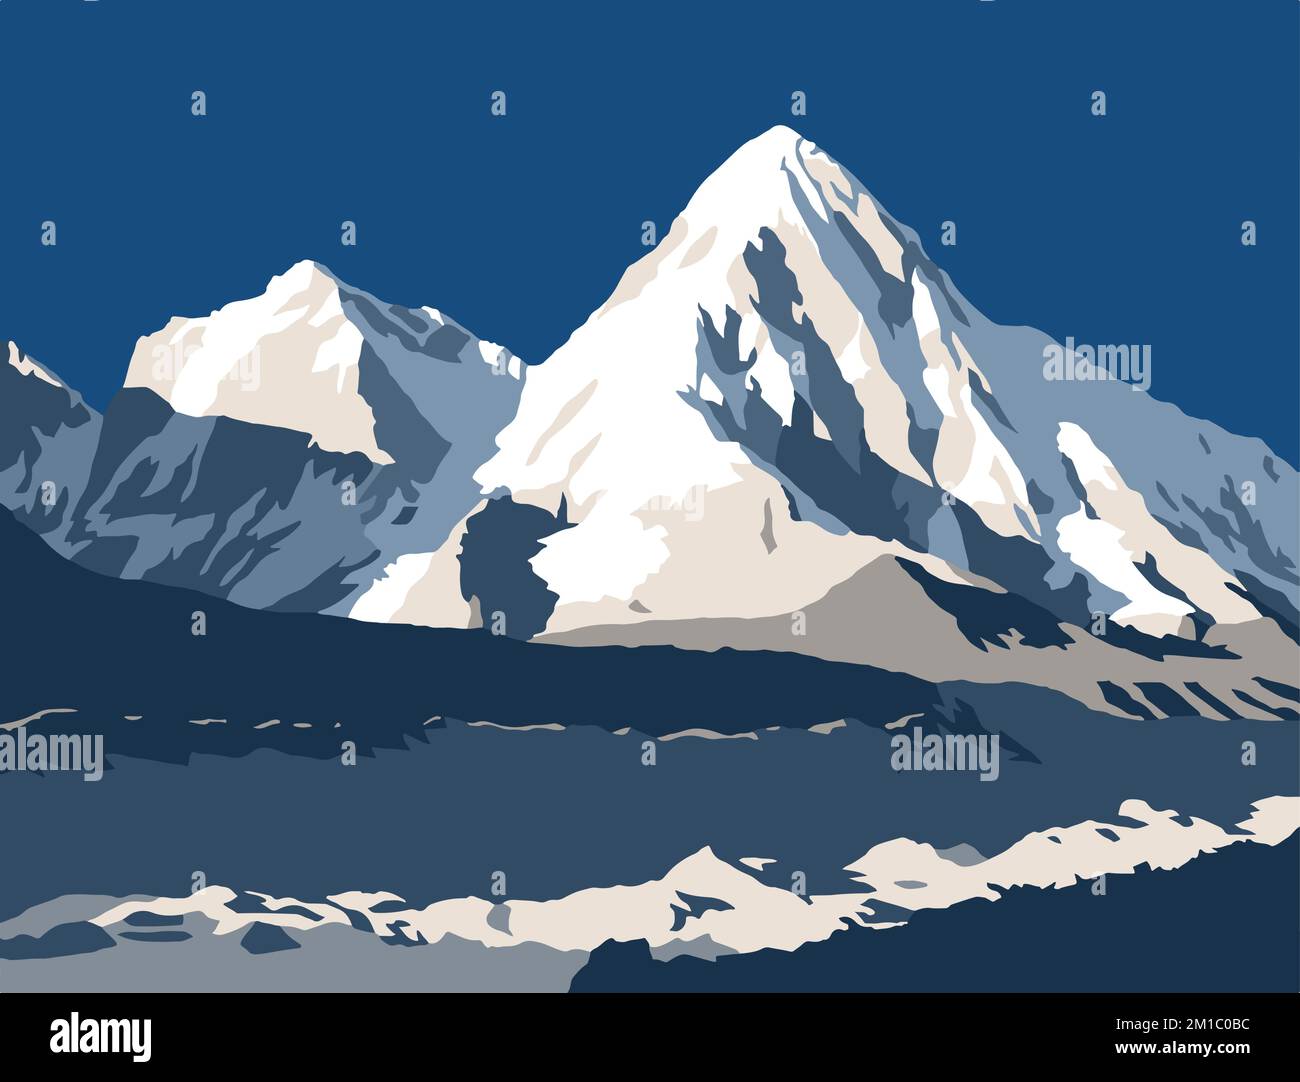 Glacier de Khumbu et Mont Pumori, illustration vectorielle, montagne himalaya du Népal Illustration de Vecteur